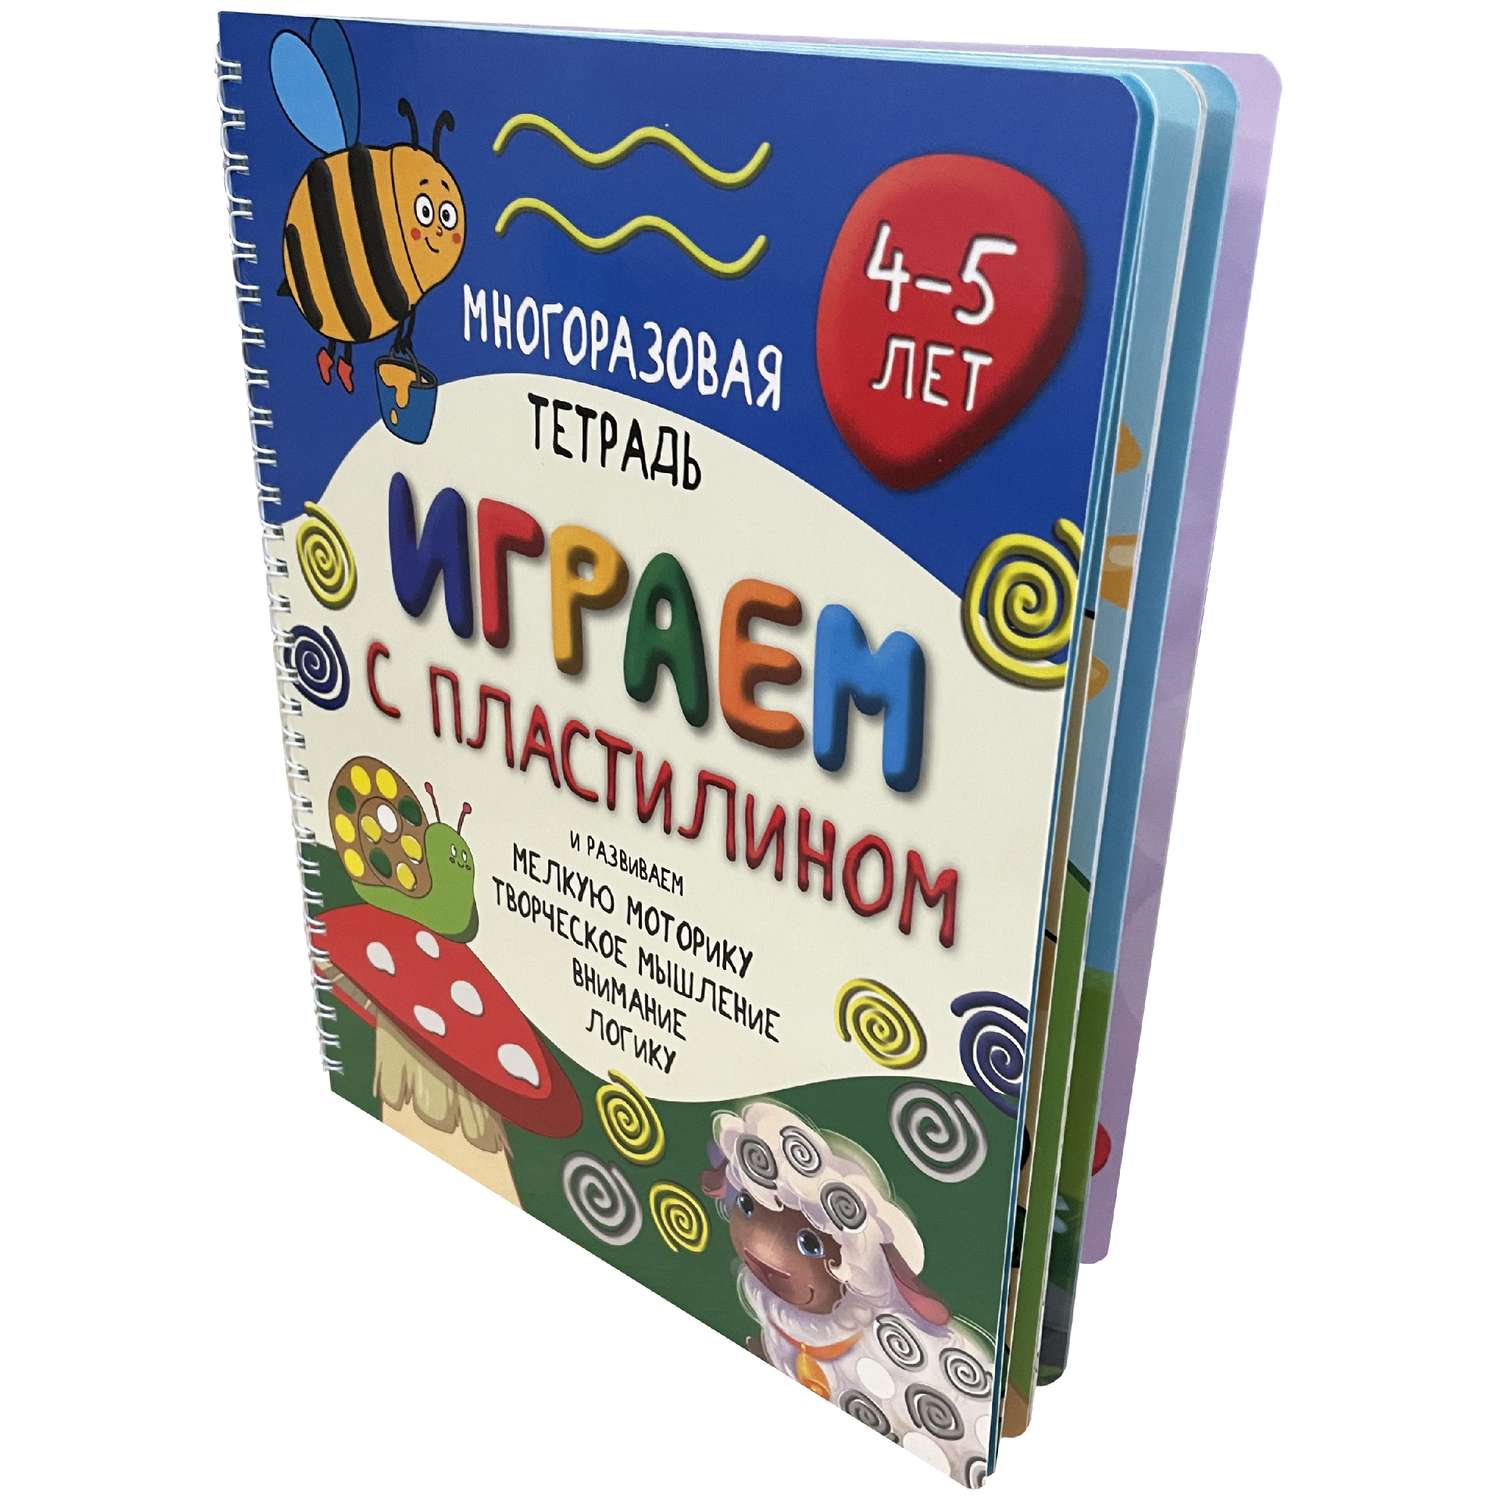 Библиотека для детей и юношества luchistii-sudak.ruва